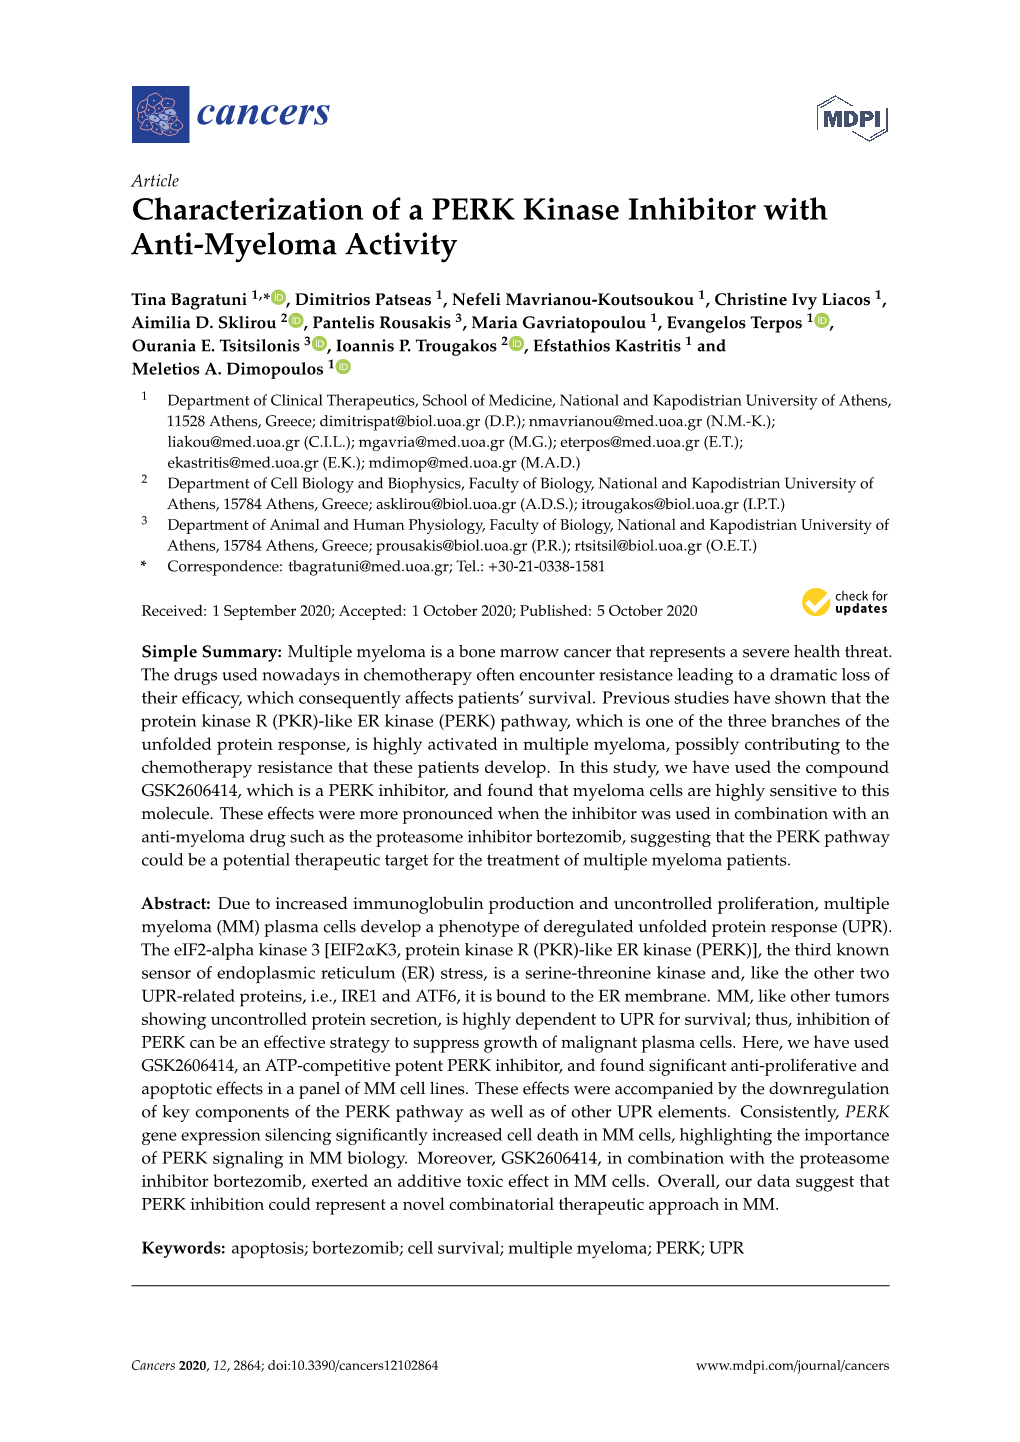 Characterization of a PERK Kinase Inhibitor with Anti-Myeloma Activity